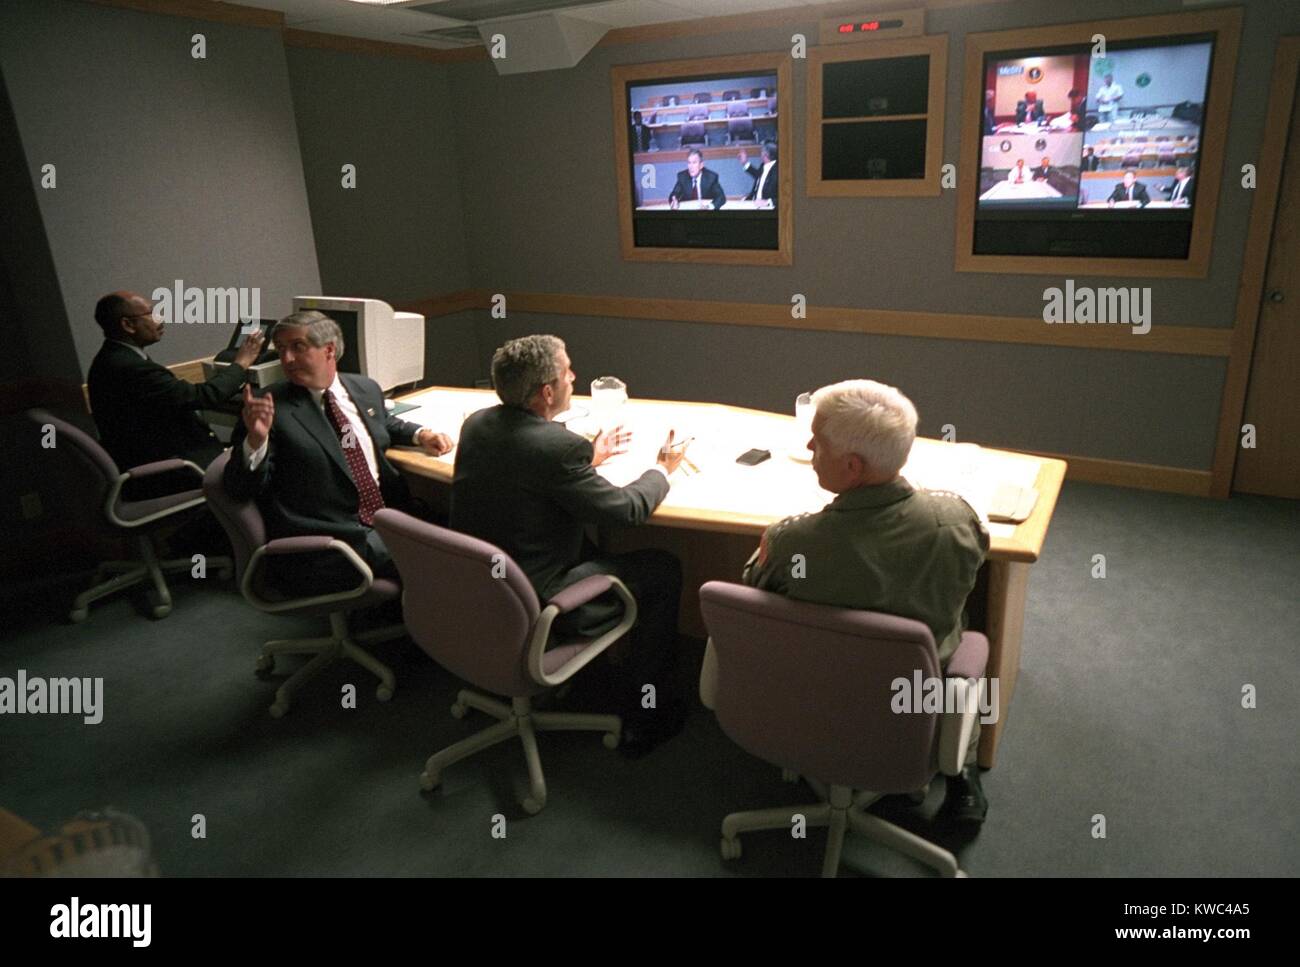 Il Presidente George W Bush in un video multischermo conferenza presso Offutt Air Force Base, Sett. 11, 2001. Egli si è incontrato con il Consiglio nazionale di sicurezza in una teleconferenza attraverso gli Stati Uniti STRATCOM bunker. Arrivò da Sarasota a 2:50 PM e sinistra per Washington, D.C. al 4:26 PM. Seduta accanto a Bush sono il capo del personale della Casa Bianca, Andy Card (sinistra) e ADM. Richard Mies. (BSLOC 2015 2 134) Foto Stock